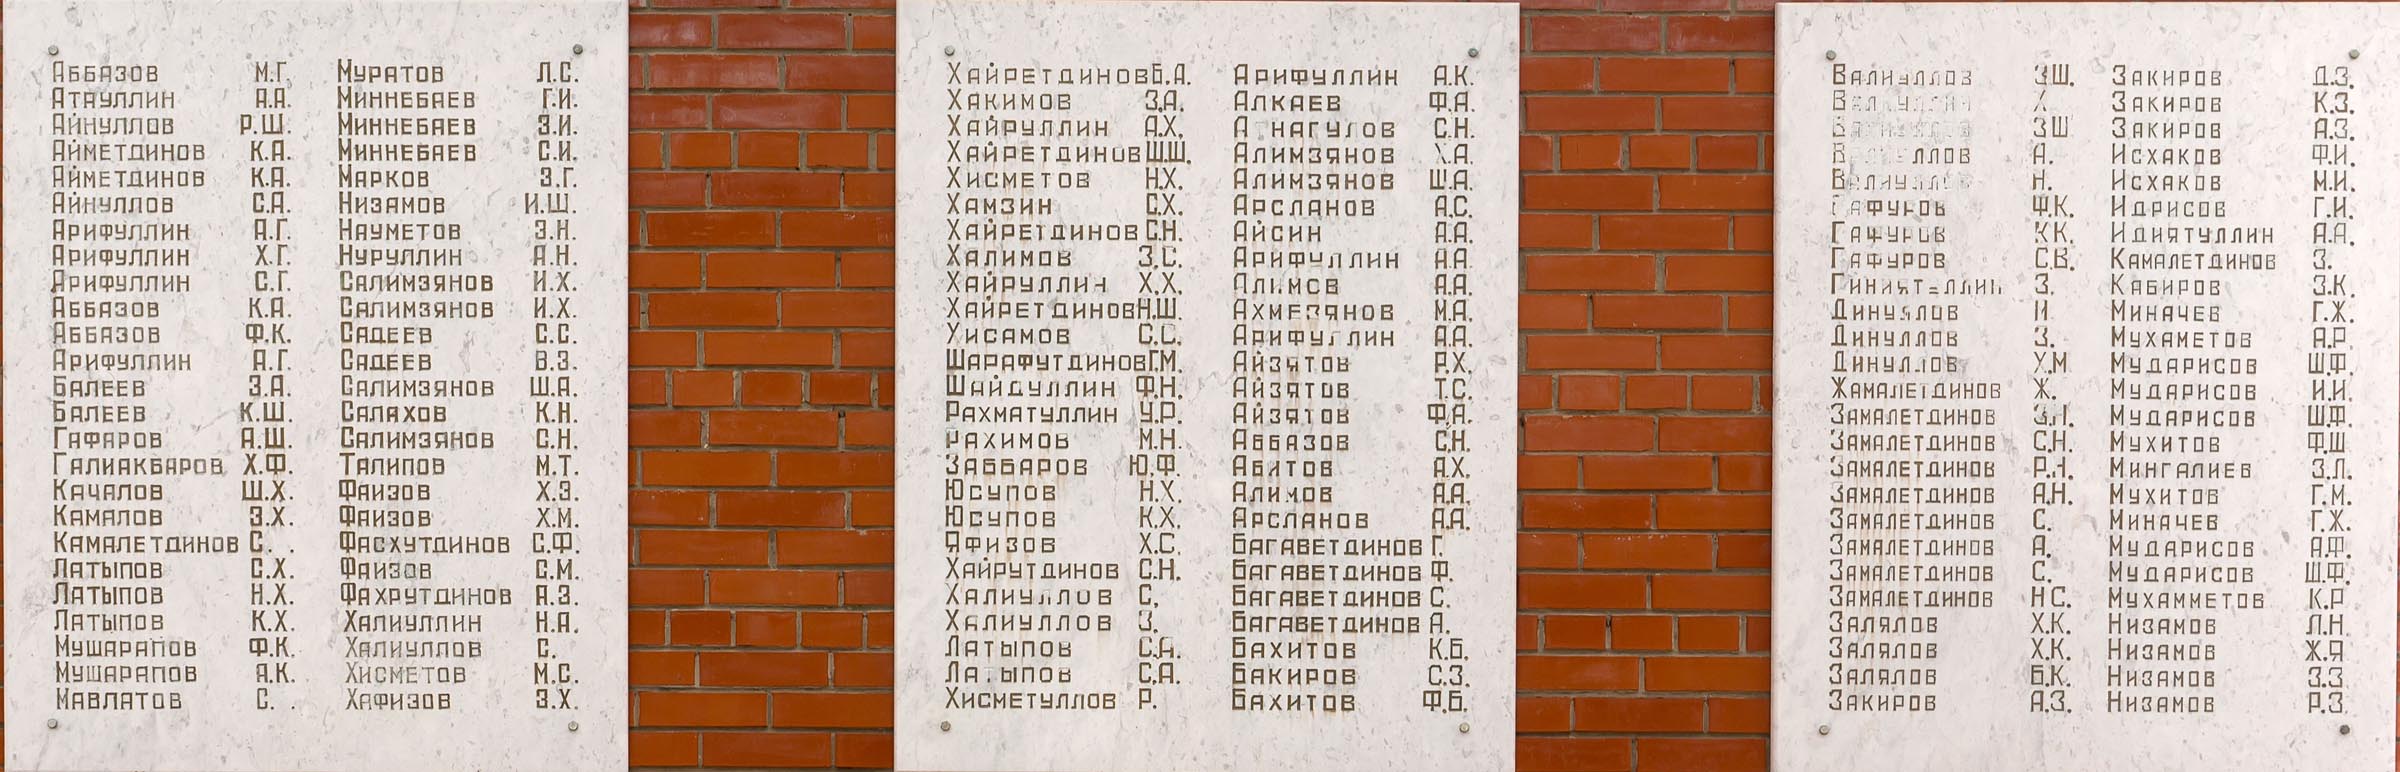 Список погибших на гурьянова